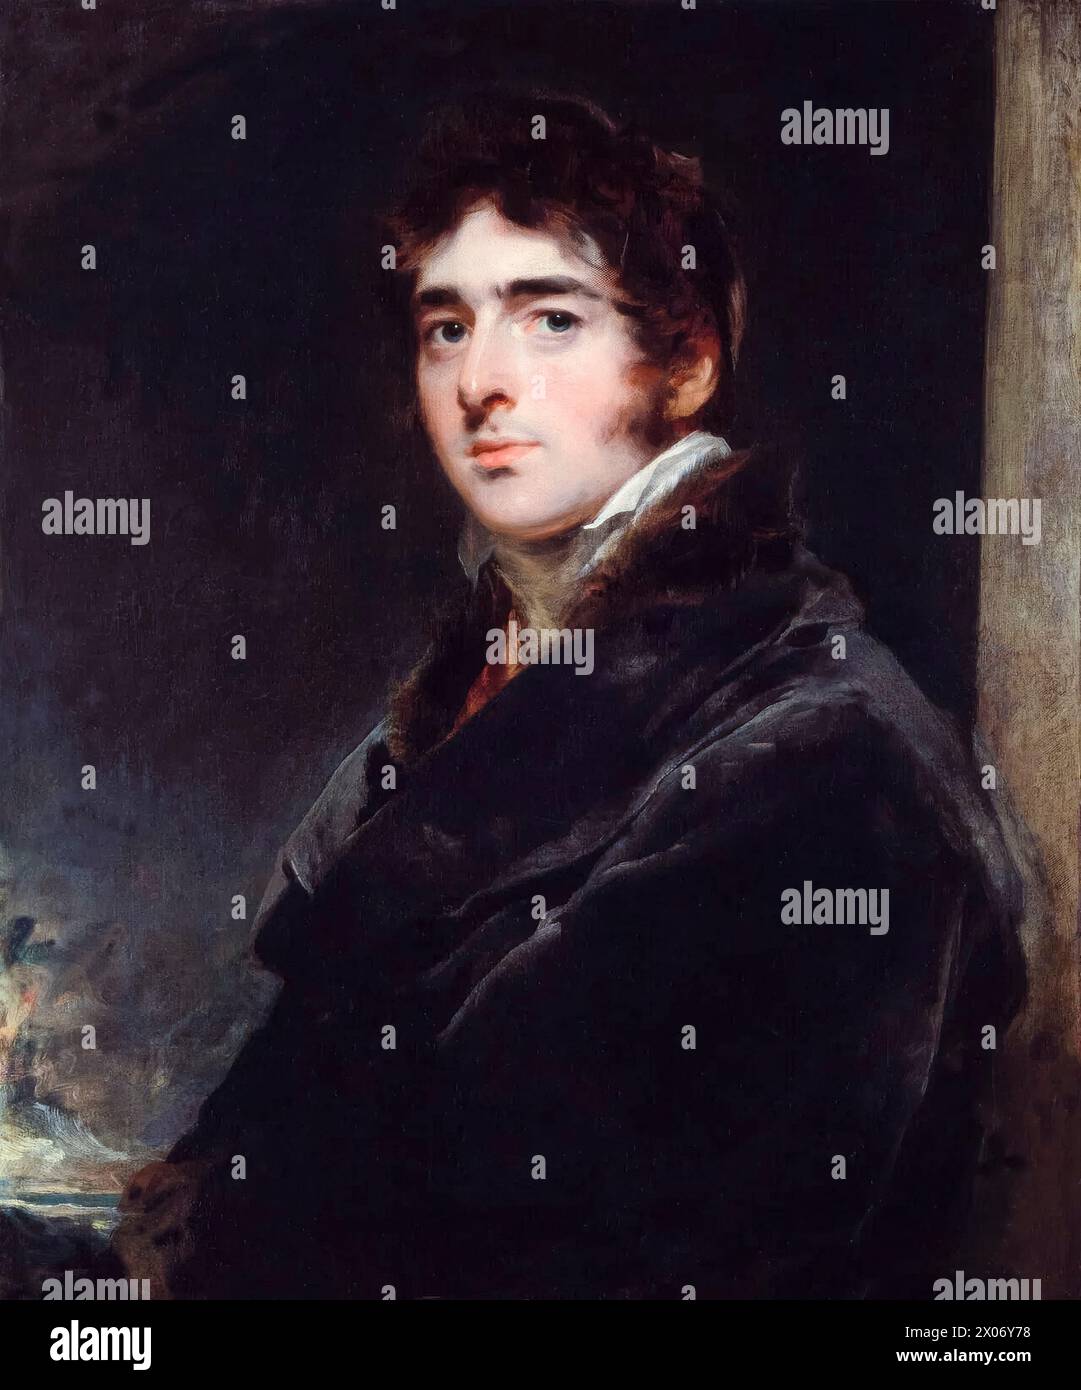 William Lamb, II visconte Melbourne (1779-1848), noto come "Lord Melbourne", primo ministro del Regno Unito luglio-novembre 1834 e 1835-1841, ritratto dipinto ad olio su tela di Sir Thomas Lawrence, circa 1805 Foto Stock